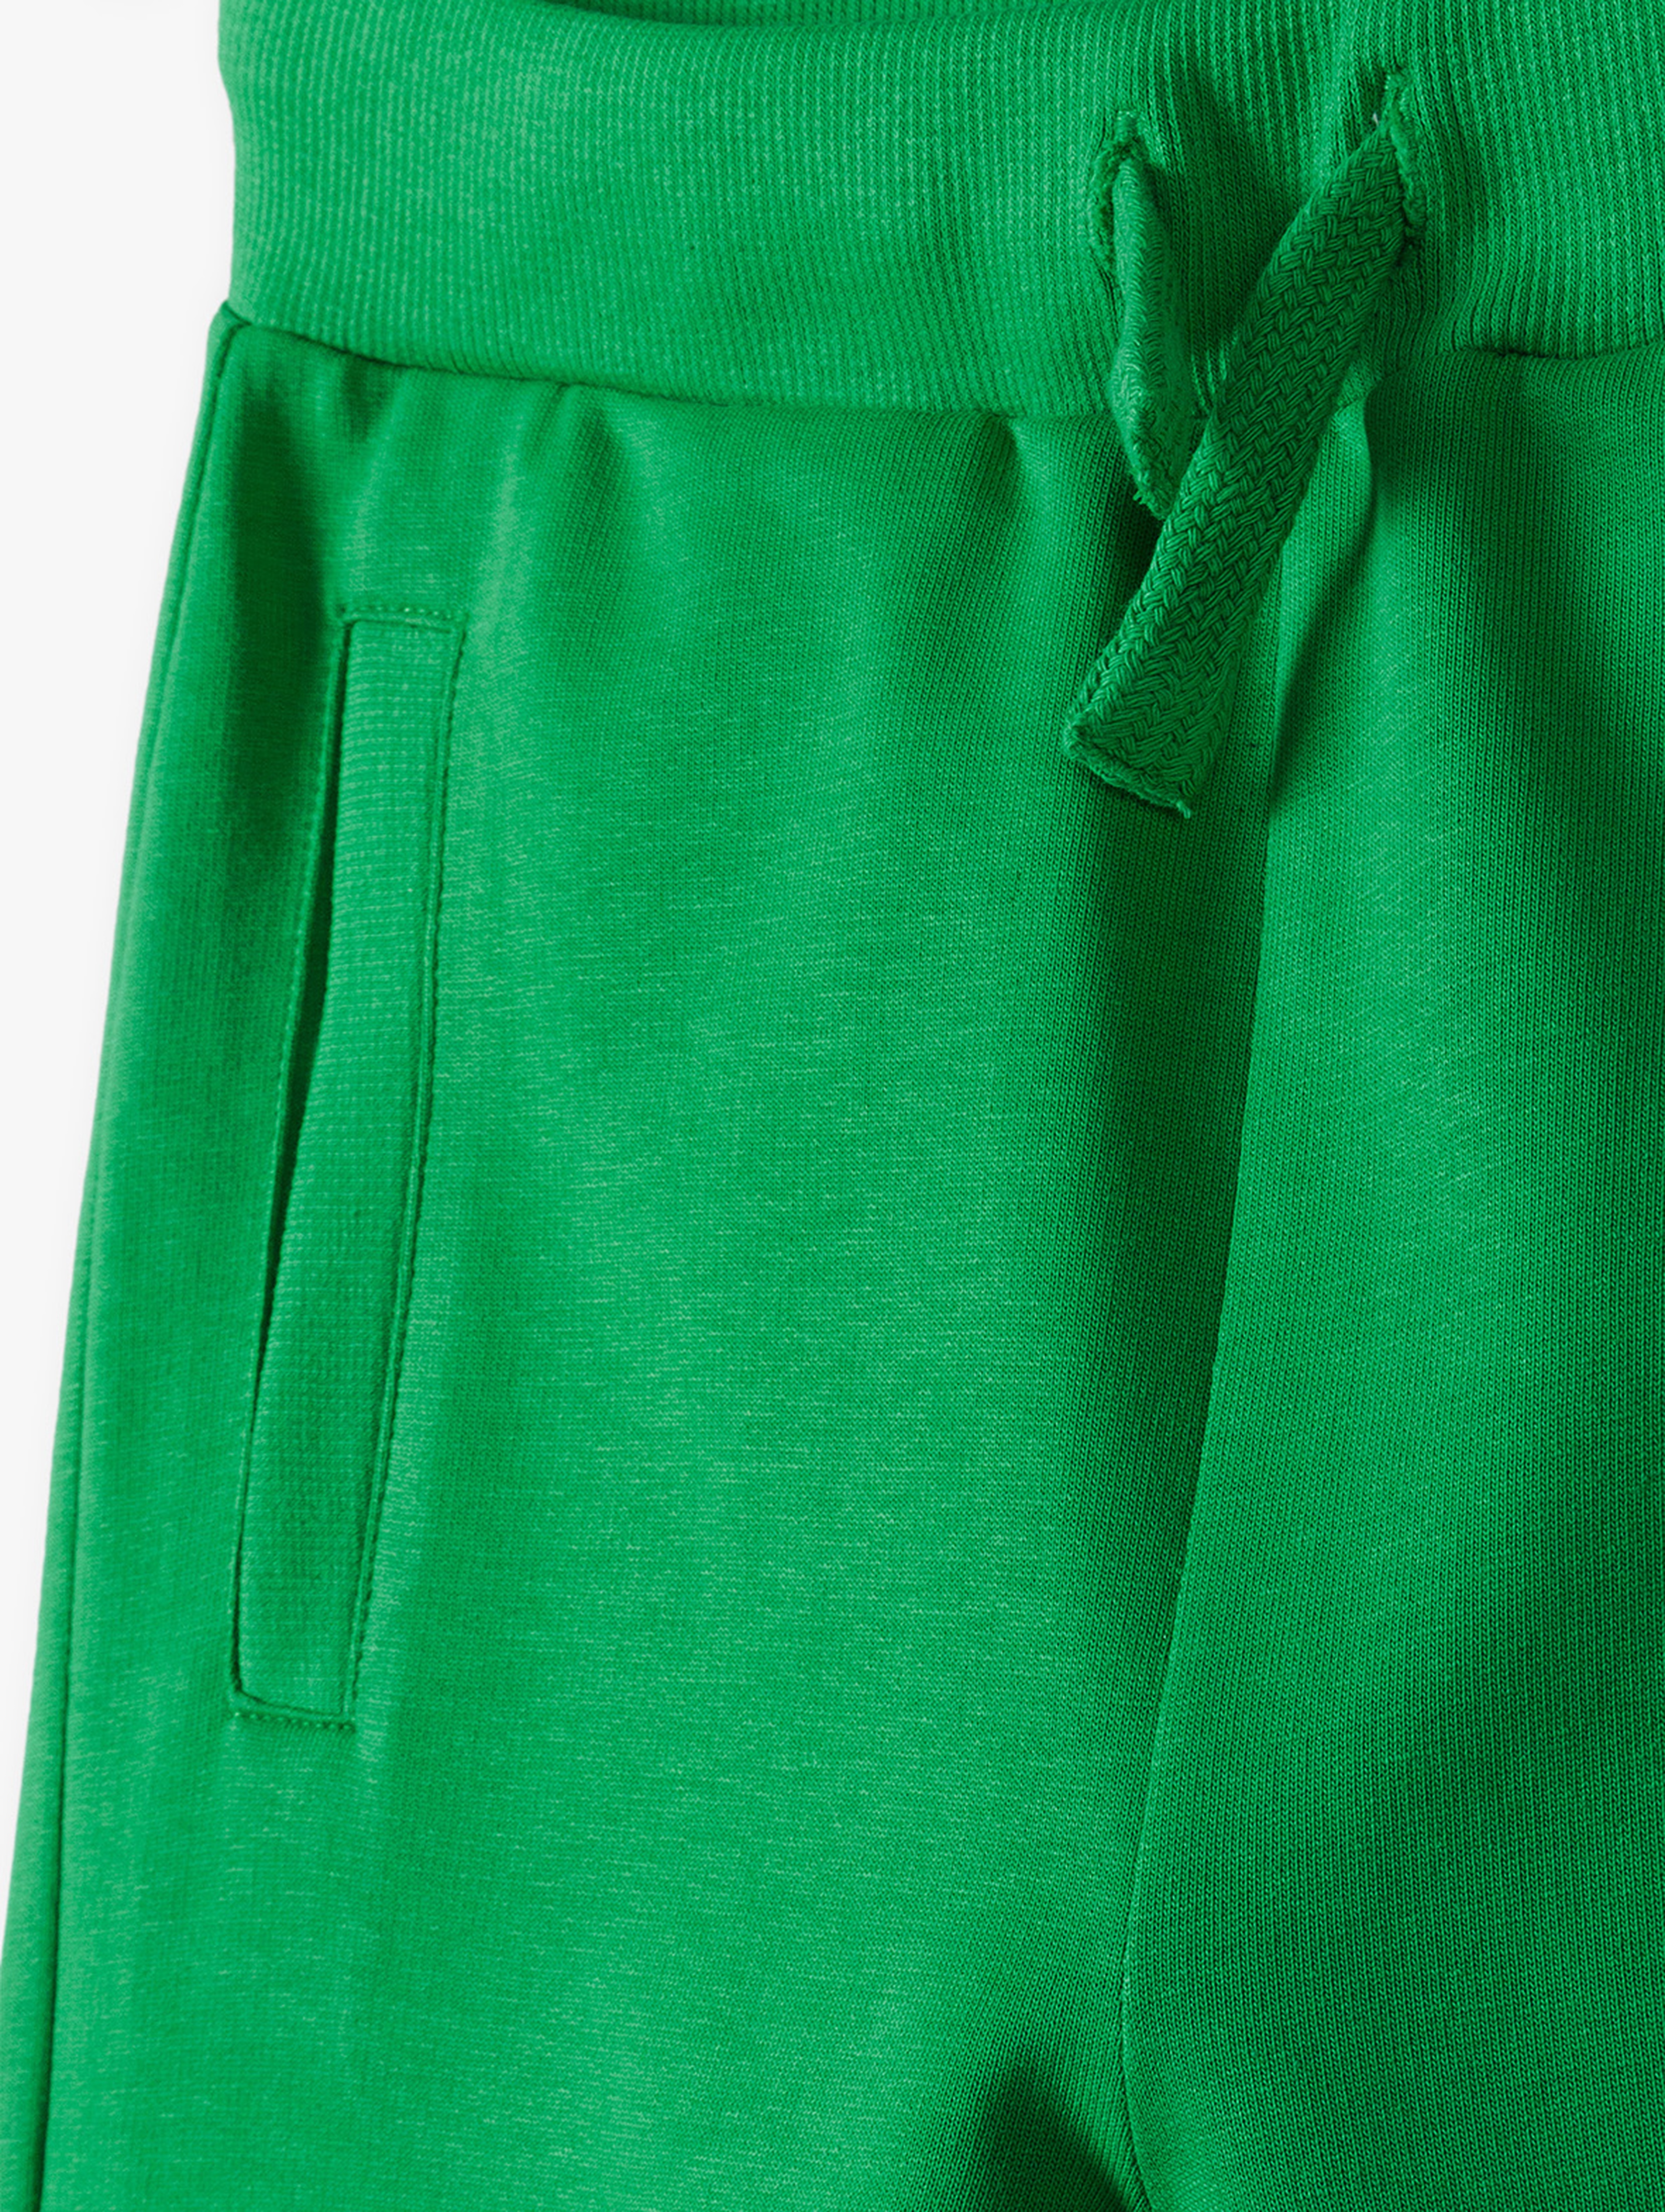 Zielone dresowe spodnie slim dla dziecka - 5.10.15.